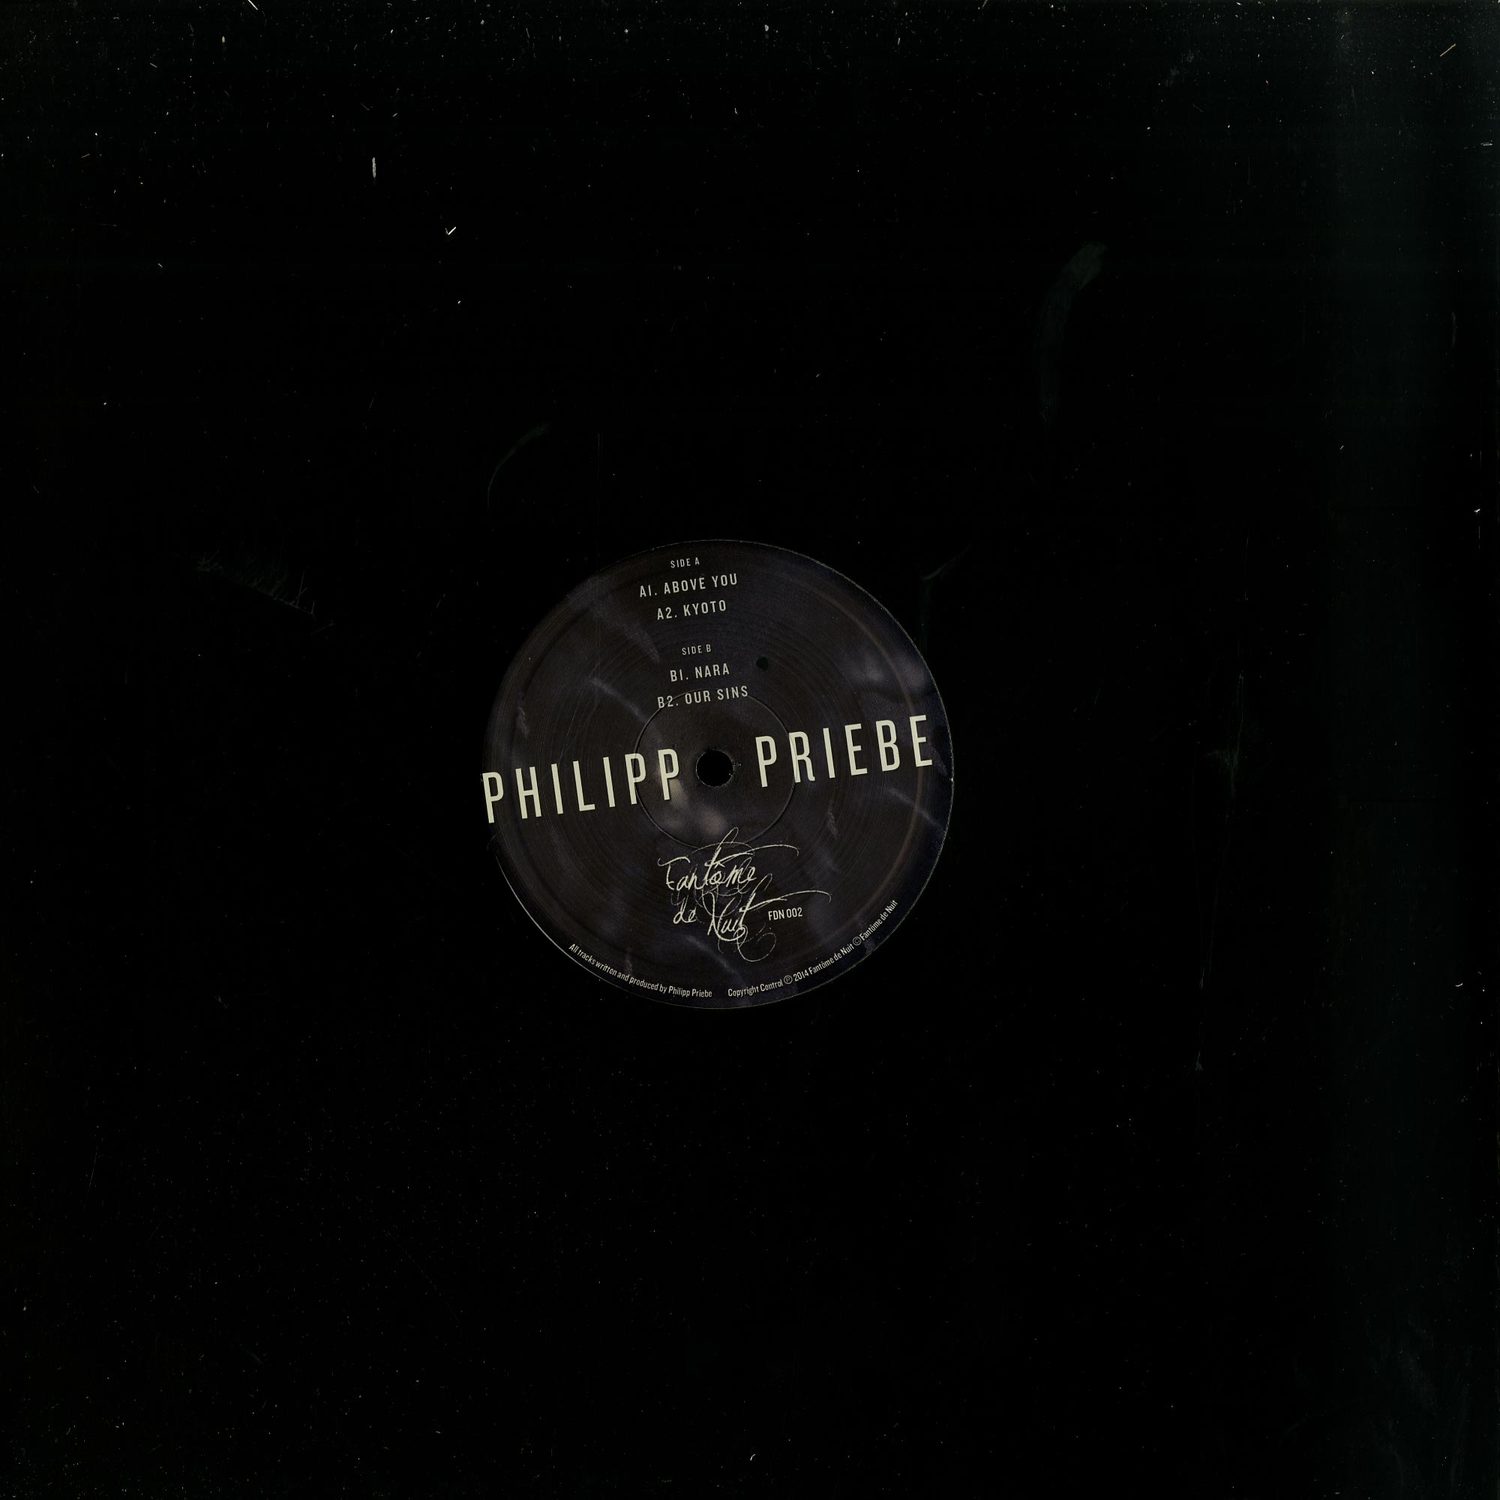 Philipp Priebe - OUR SINS EP